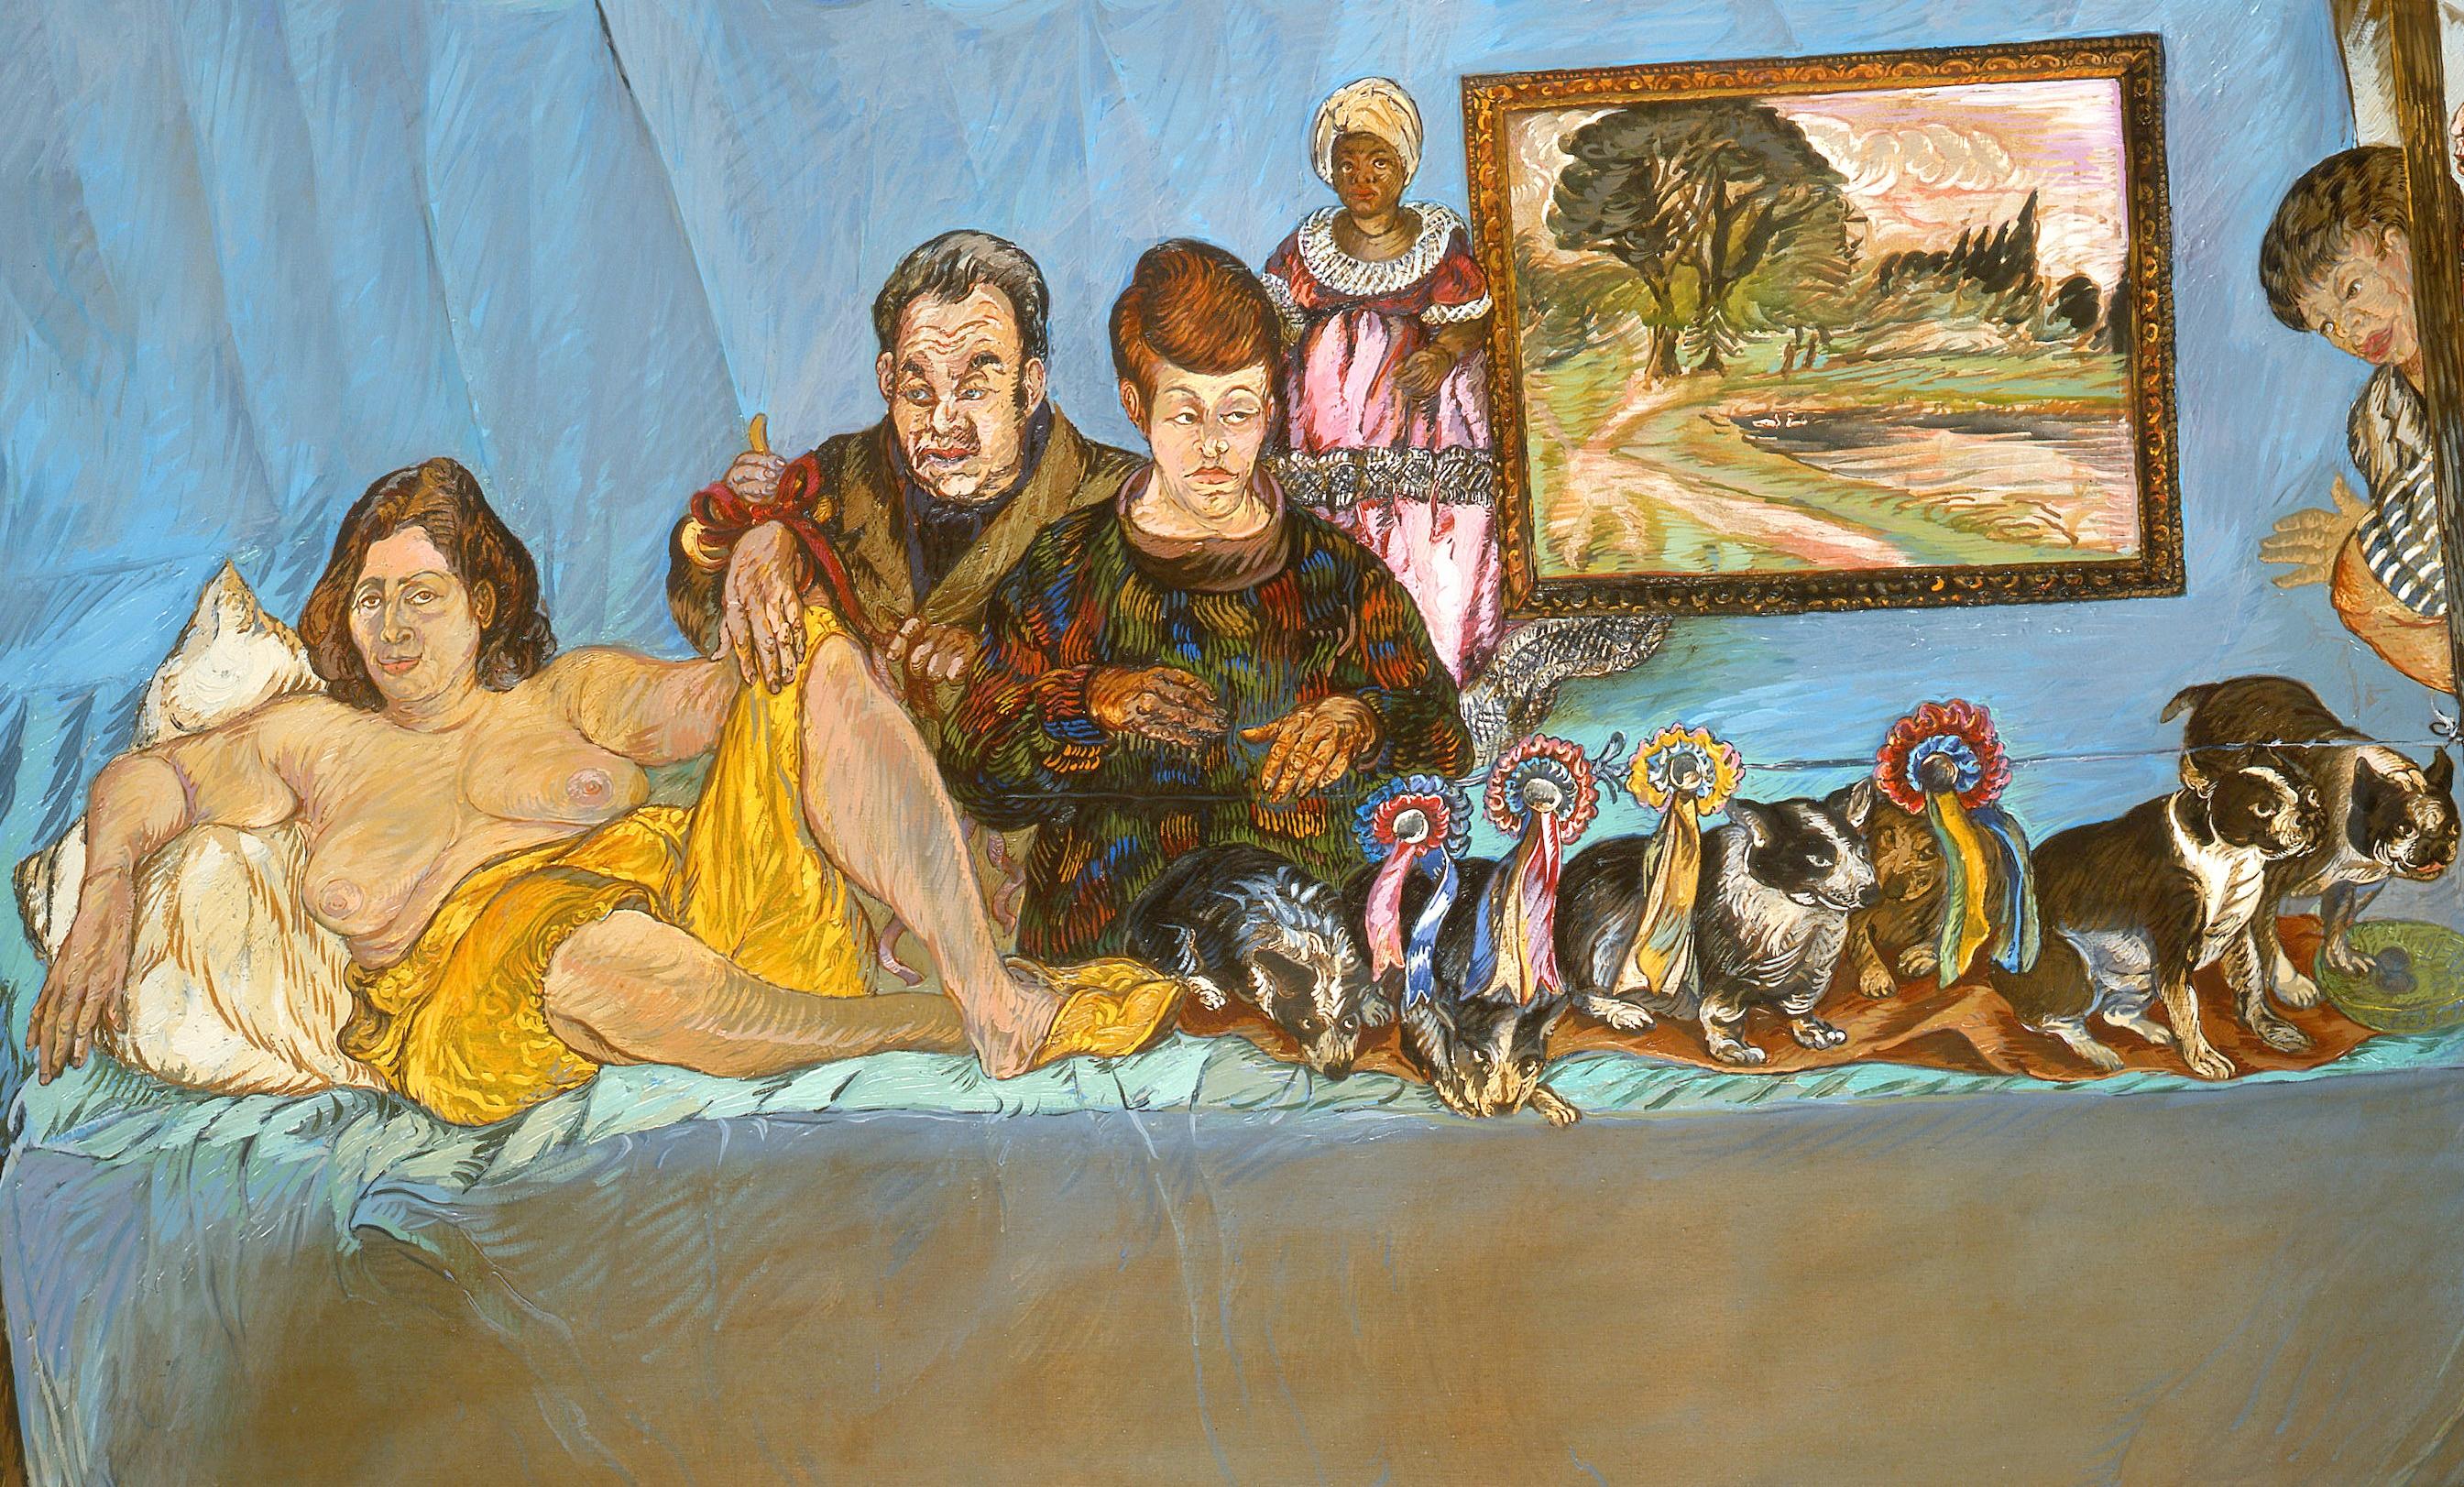 Le grand prix A Moreno Moreno Art contemporain peinture à l'huile comédie humaine nu  - Painting de Moreno Pincas